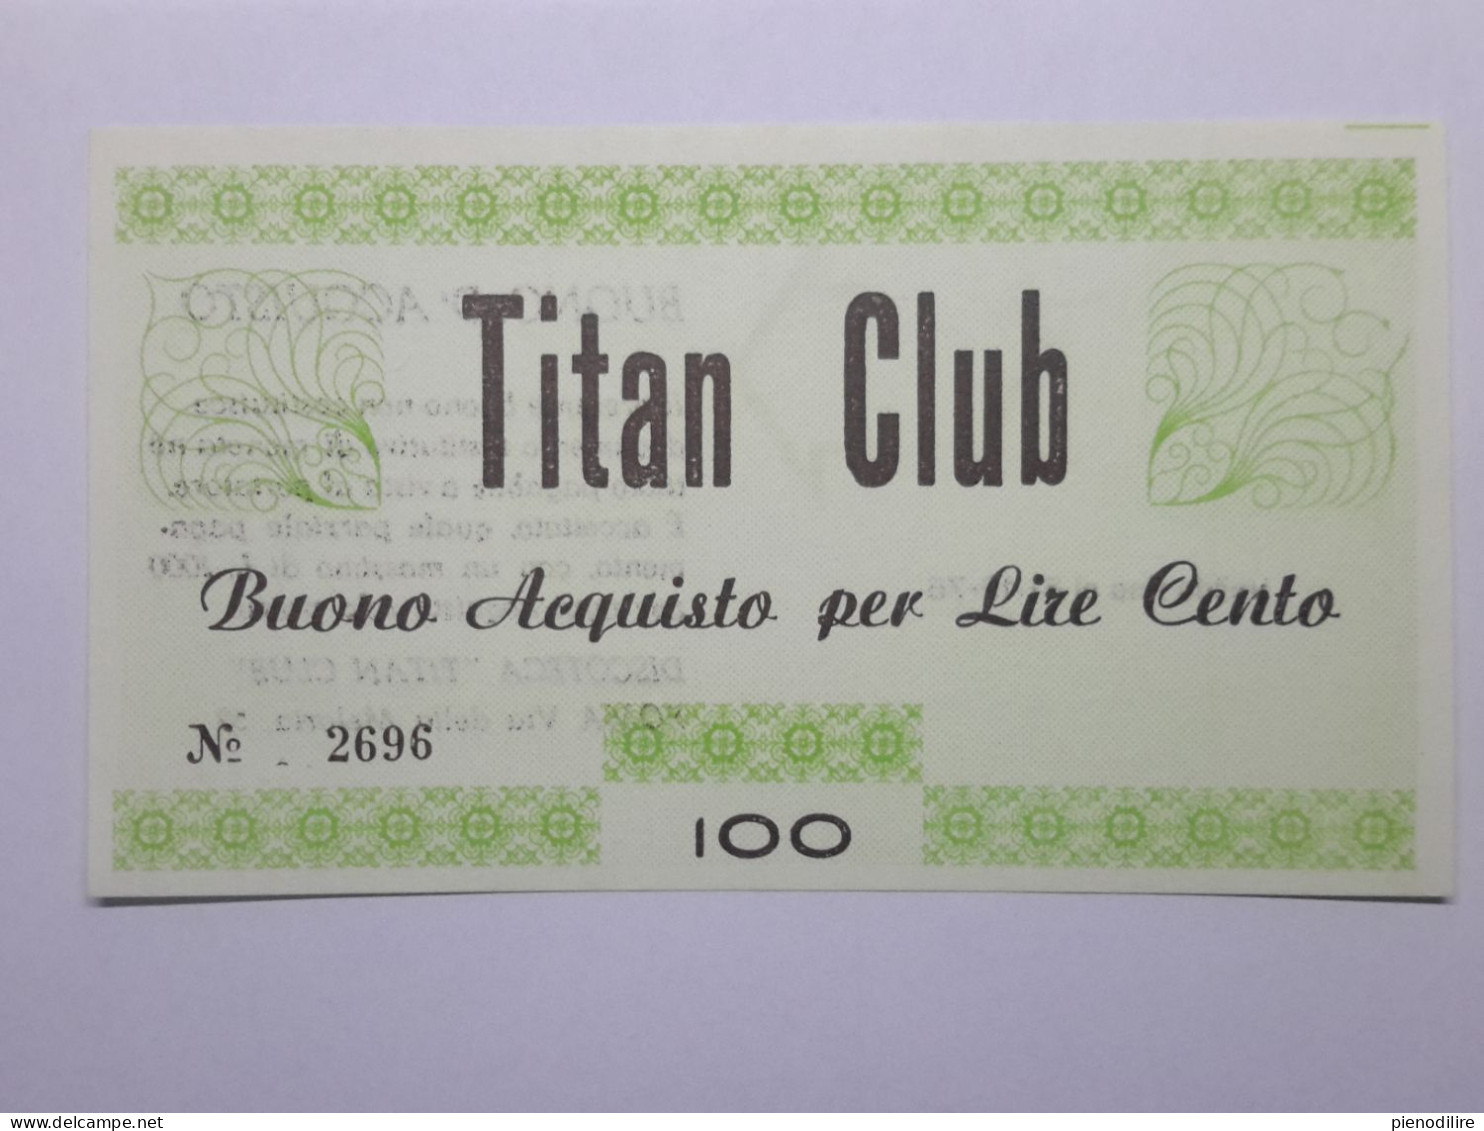 LOTTO 4Pz. 100 200 300 400 LIRE BUONI ACQUISTO TITAN CLUB VALIDO FINO AL 31.12.1976 (A.3) - [10] Assegni E Miniassegni